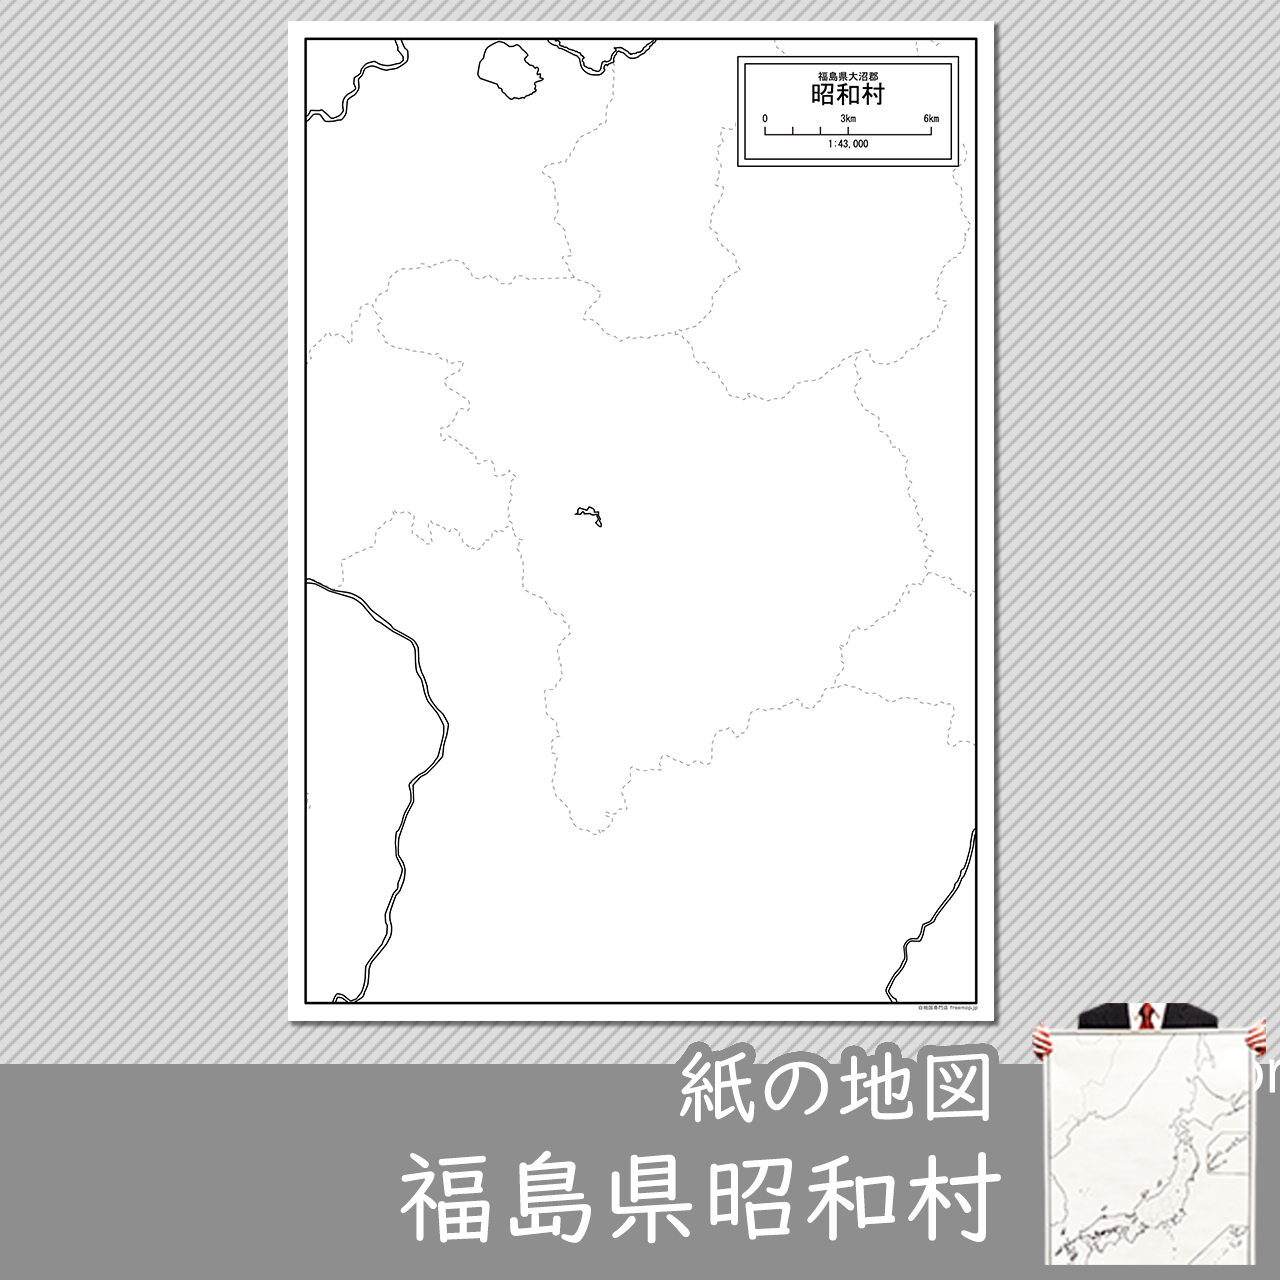 昭和村の紙の白地図